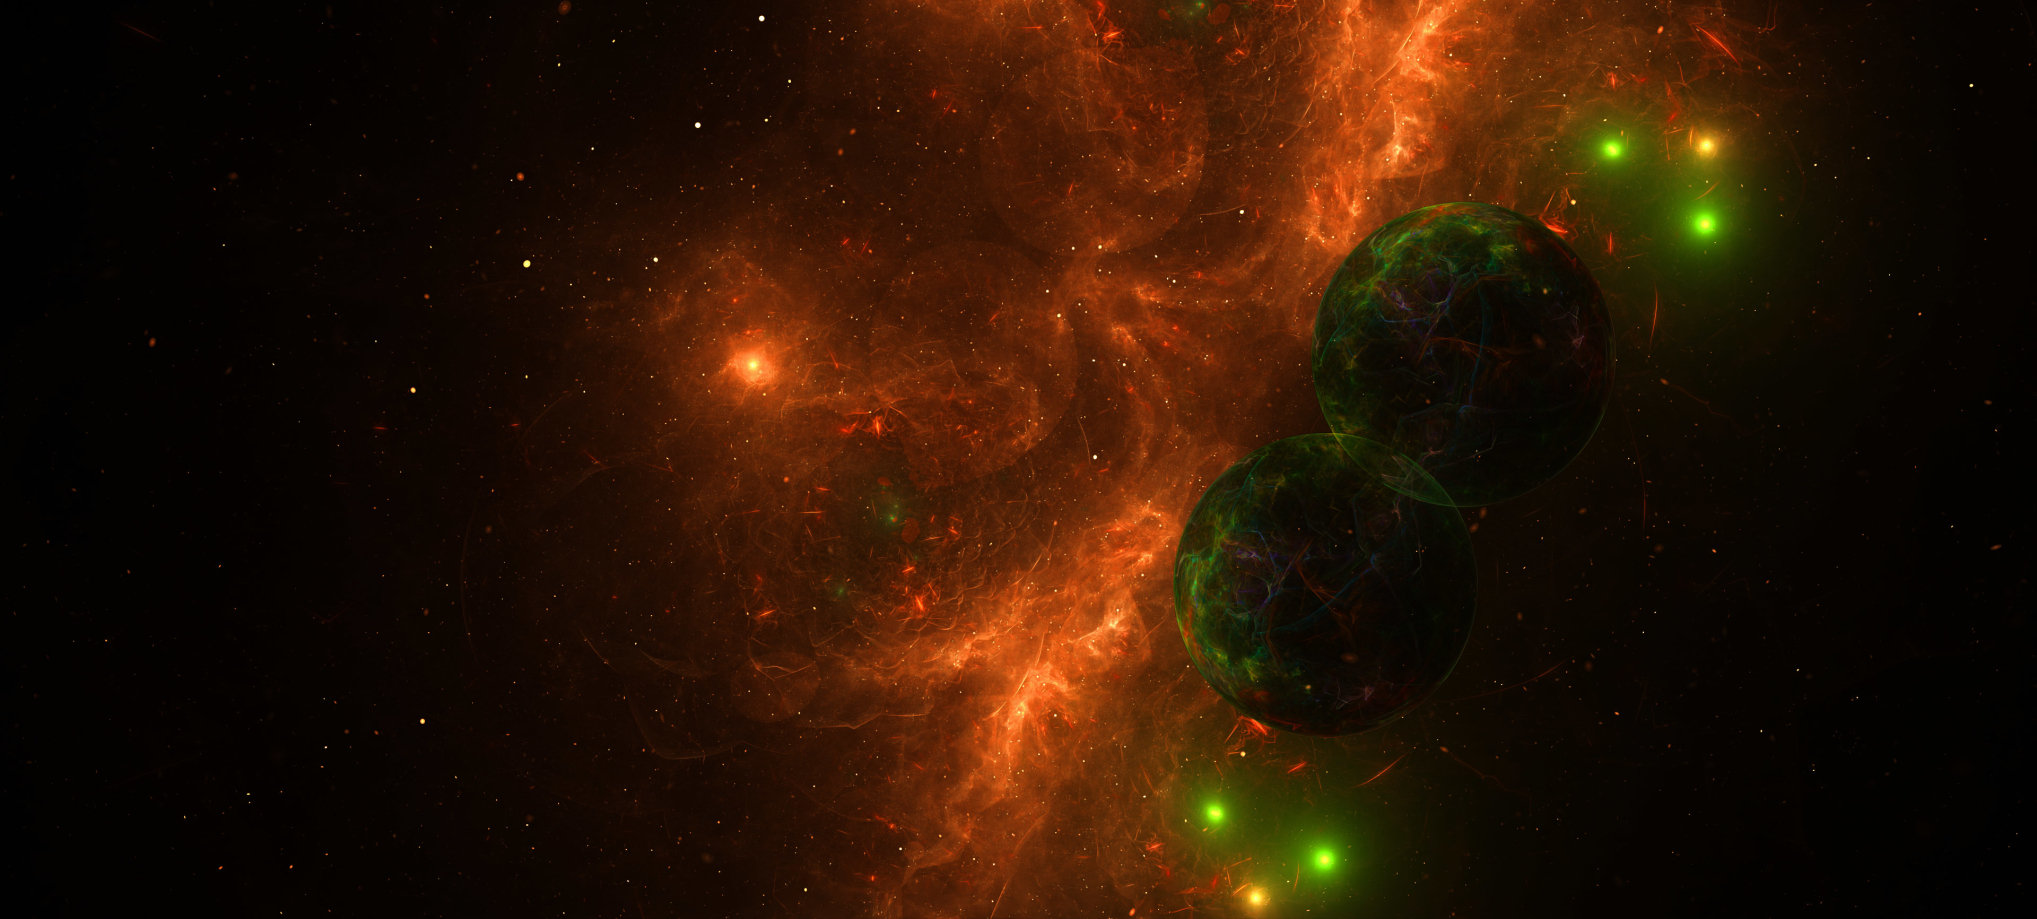 2037x919 Fire Nebula Digital 2037x919 Resolution Wallpaper, HD Nature ...